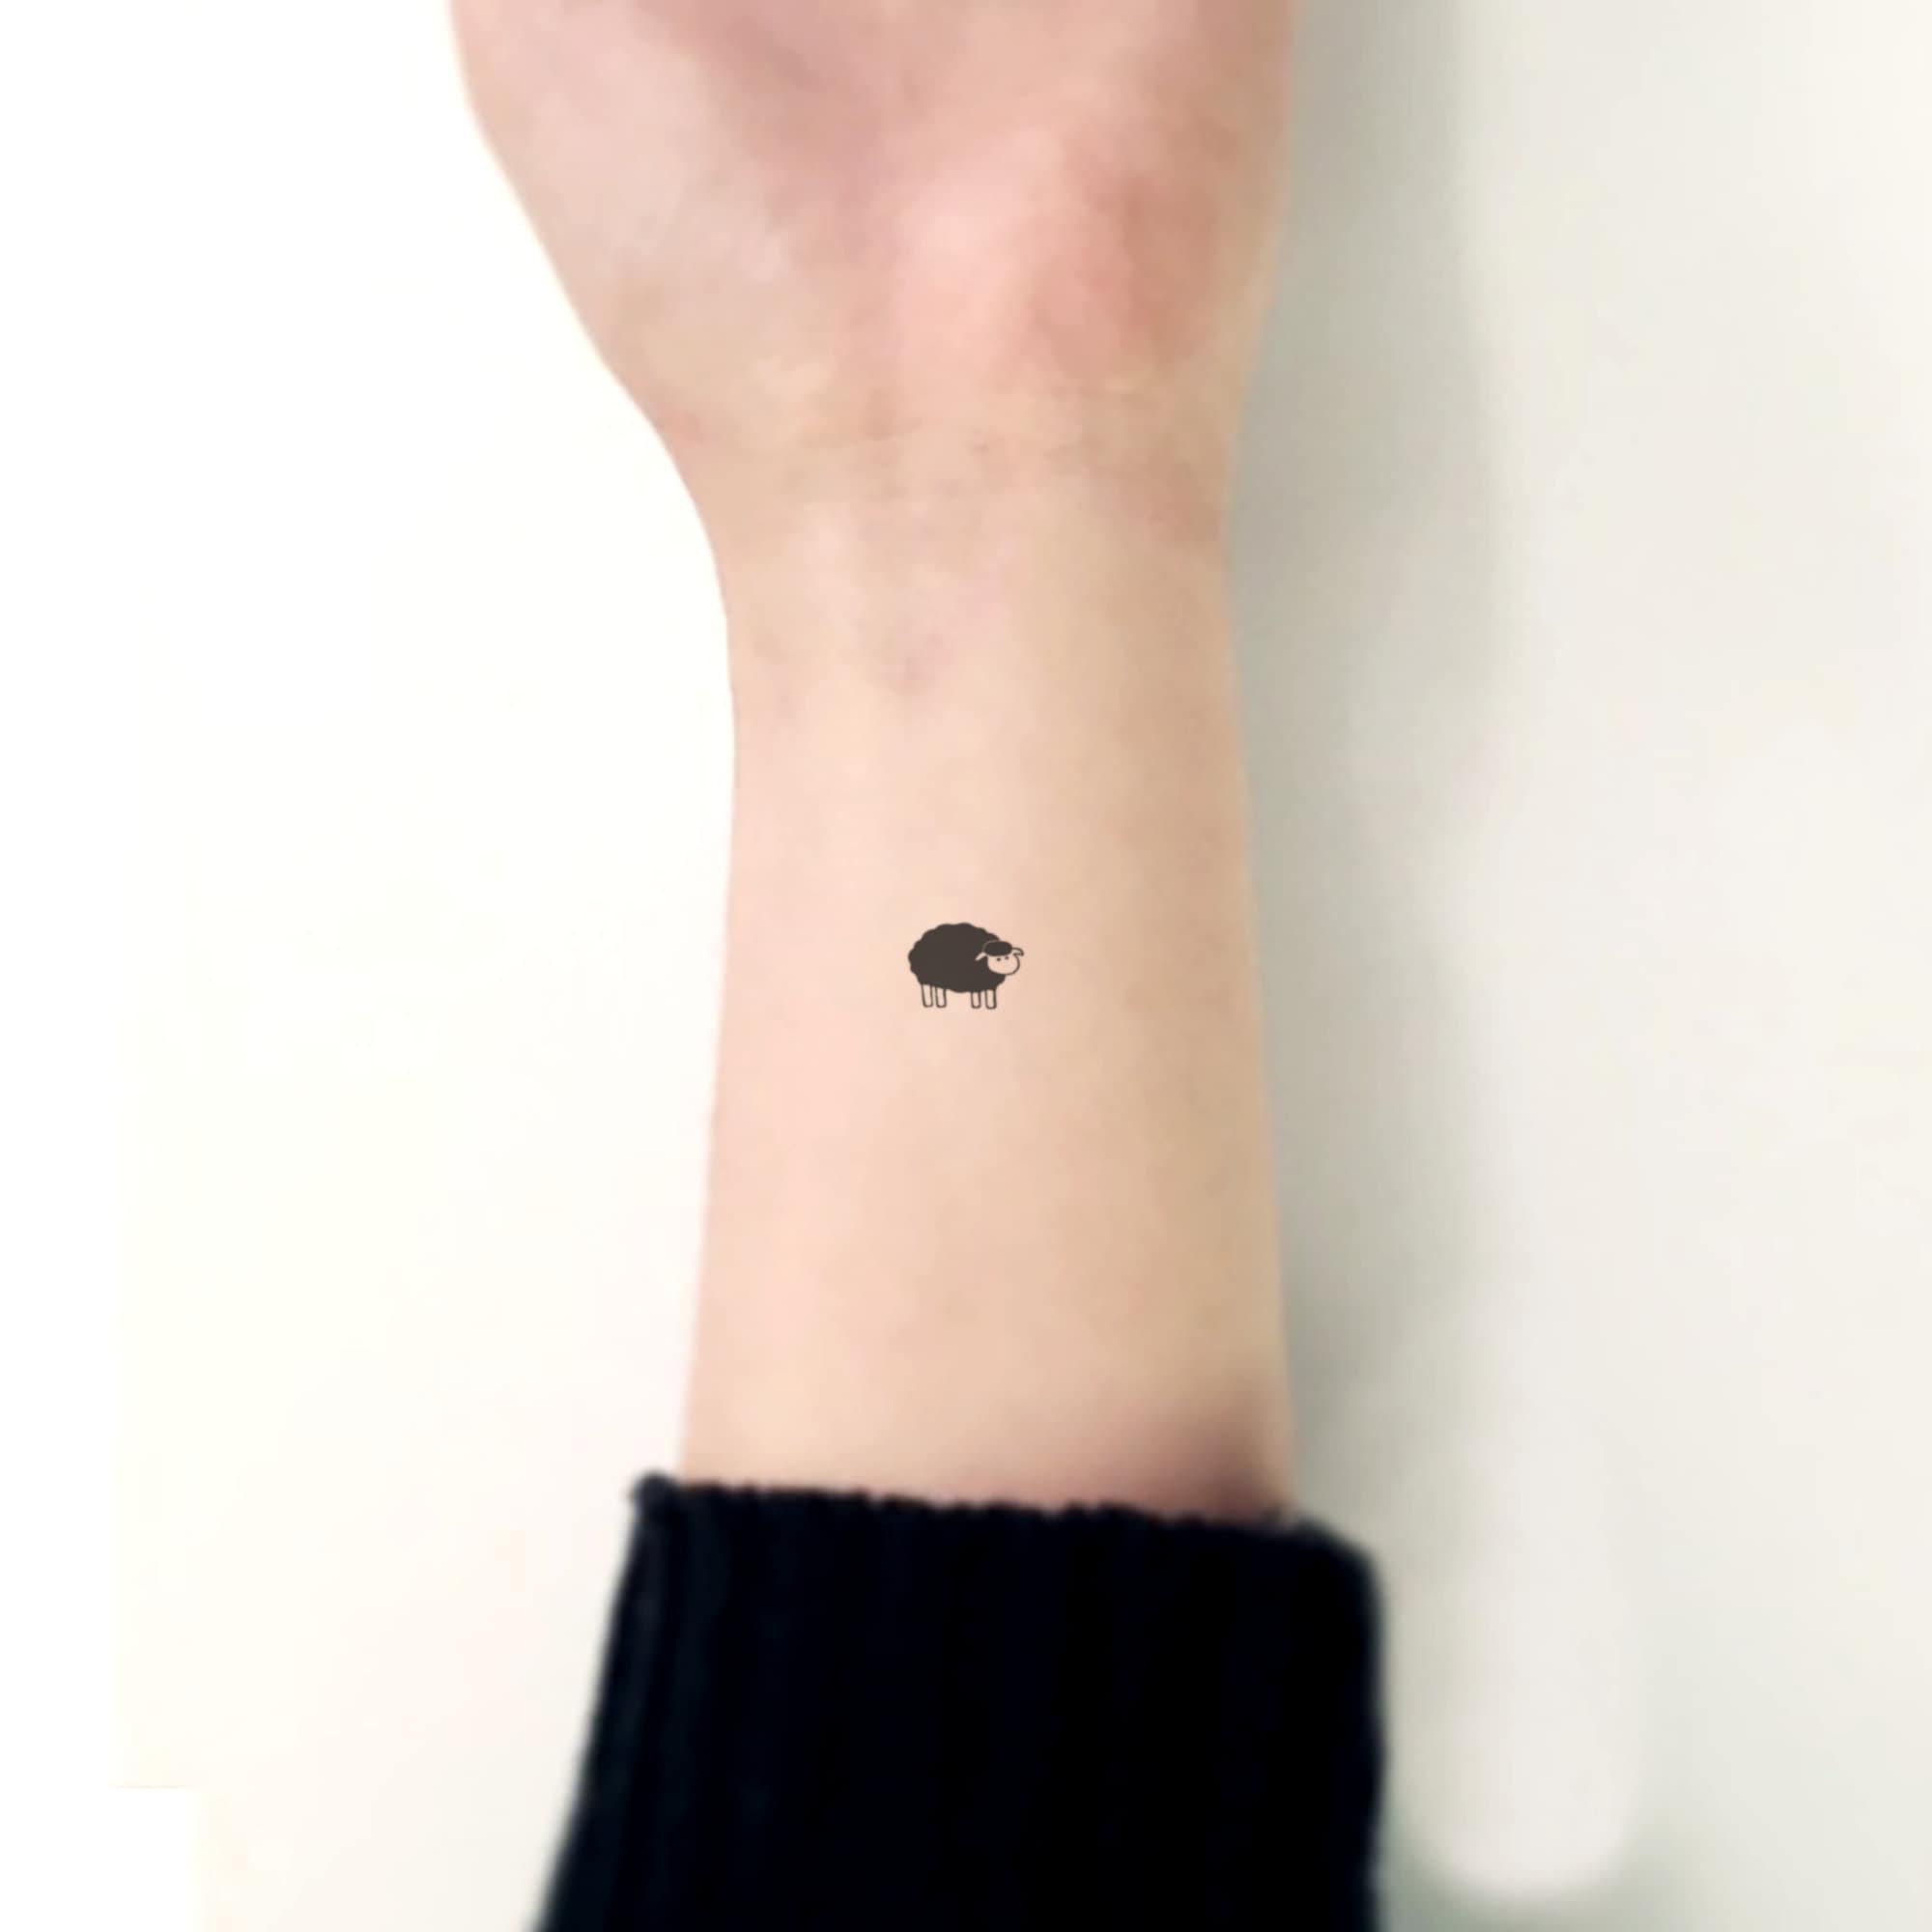 Minimalist sheep tattoo on the wrist